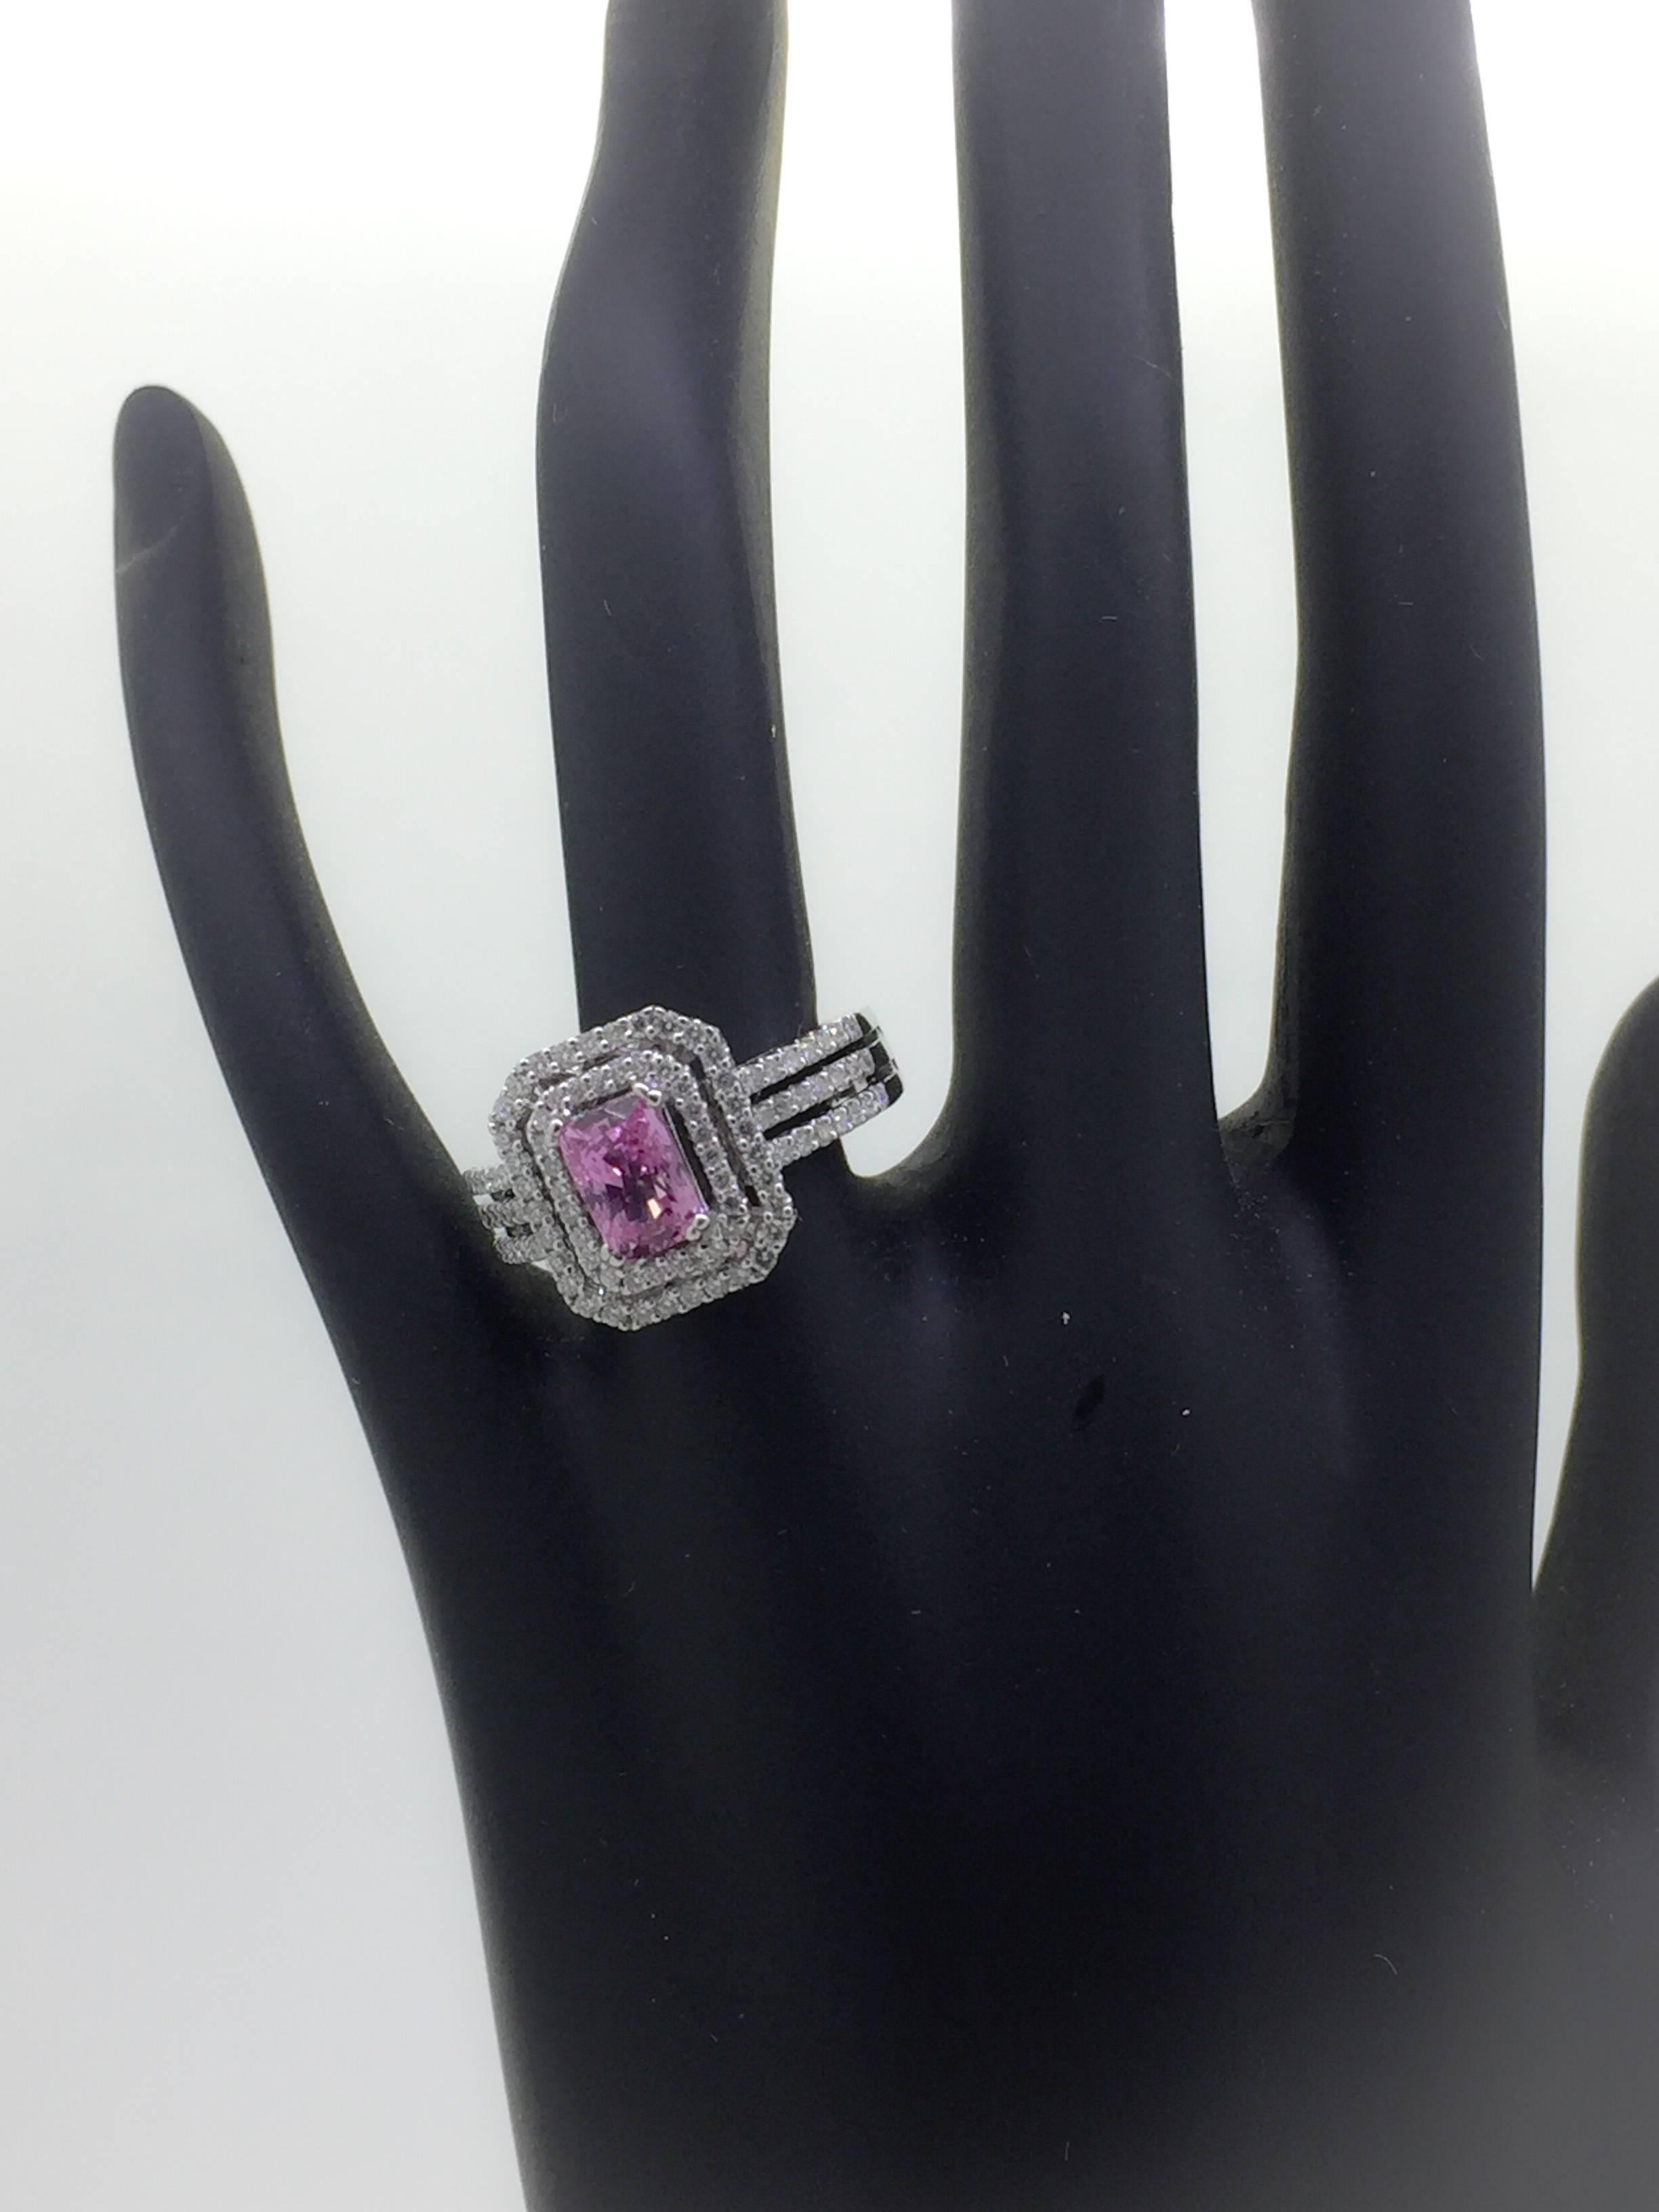 Modern 2.16 Carat Pink Sapphire Diamond Ring in 18 Karat White Gold